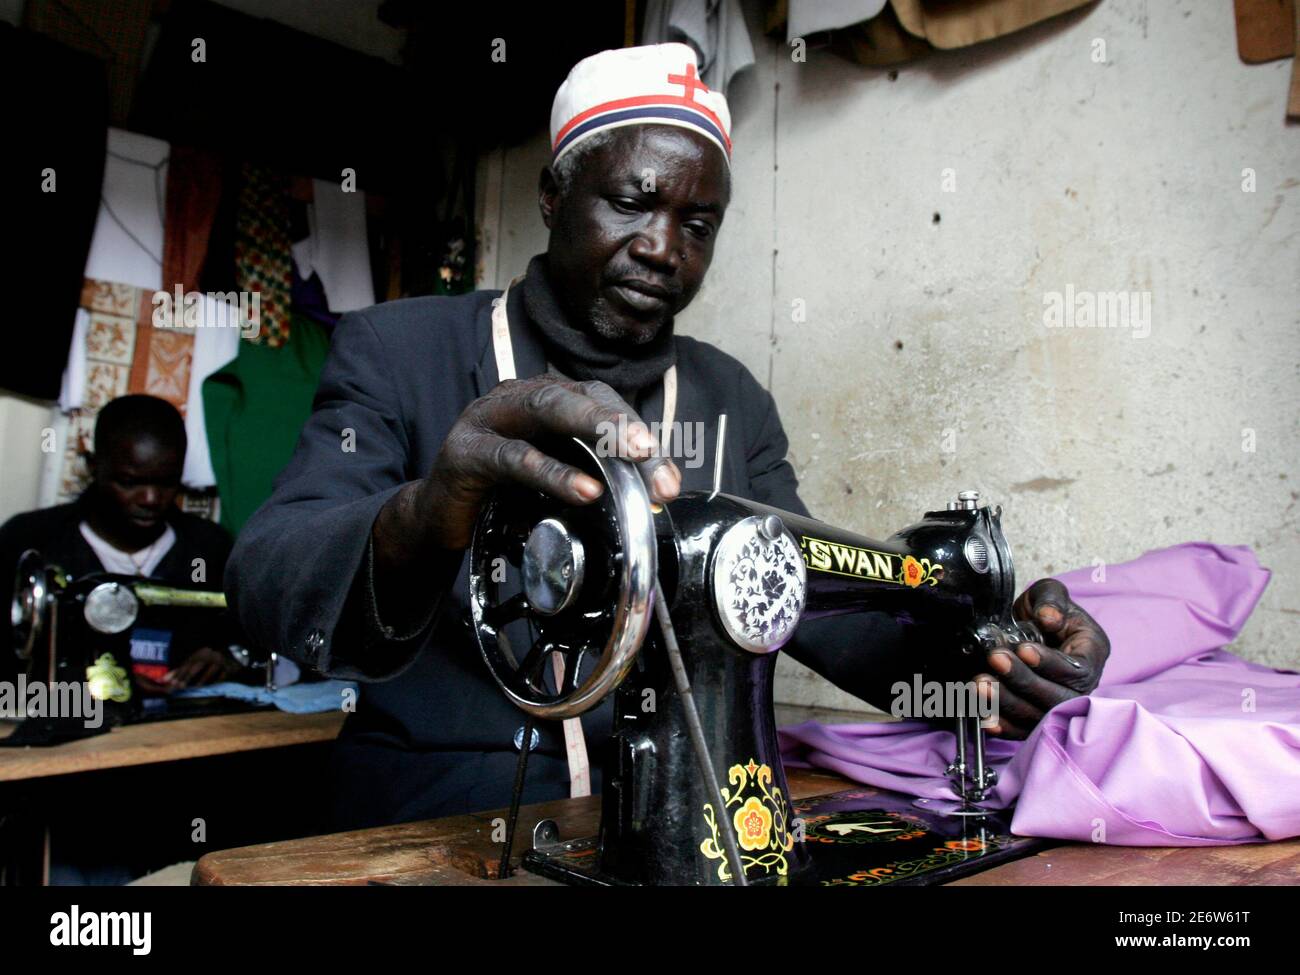 Chrispin Amolo Reparaturen eine Outfit in Kibera Slums, Heimat von mehr als 800.000 Menschen in Kenias Hauptstadt Nairobi, 6. Dezember 2006. Slum-Bevölkerung der Welt wird voraussichtlich um 27 Millionen pro Jahr zwischen 2000-2020, nach der UN-menschliche Siedlungen Programm UN-HABITAT wachsen. In Subsahara-Afrika rund 72 Prozent der städtischen Bevölkerung bereits in Slums Leben, und die jährliche Wachstumsrate ist die höchste in der Welt bei 4,53 %. 6. Dezember 2006 Foto.  Entsprechend der Funktion Städte/Kenia-SLUM REUTERS/Thomas Mukoya (Kenia) Stockfoto